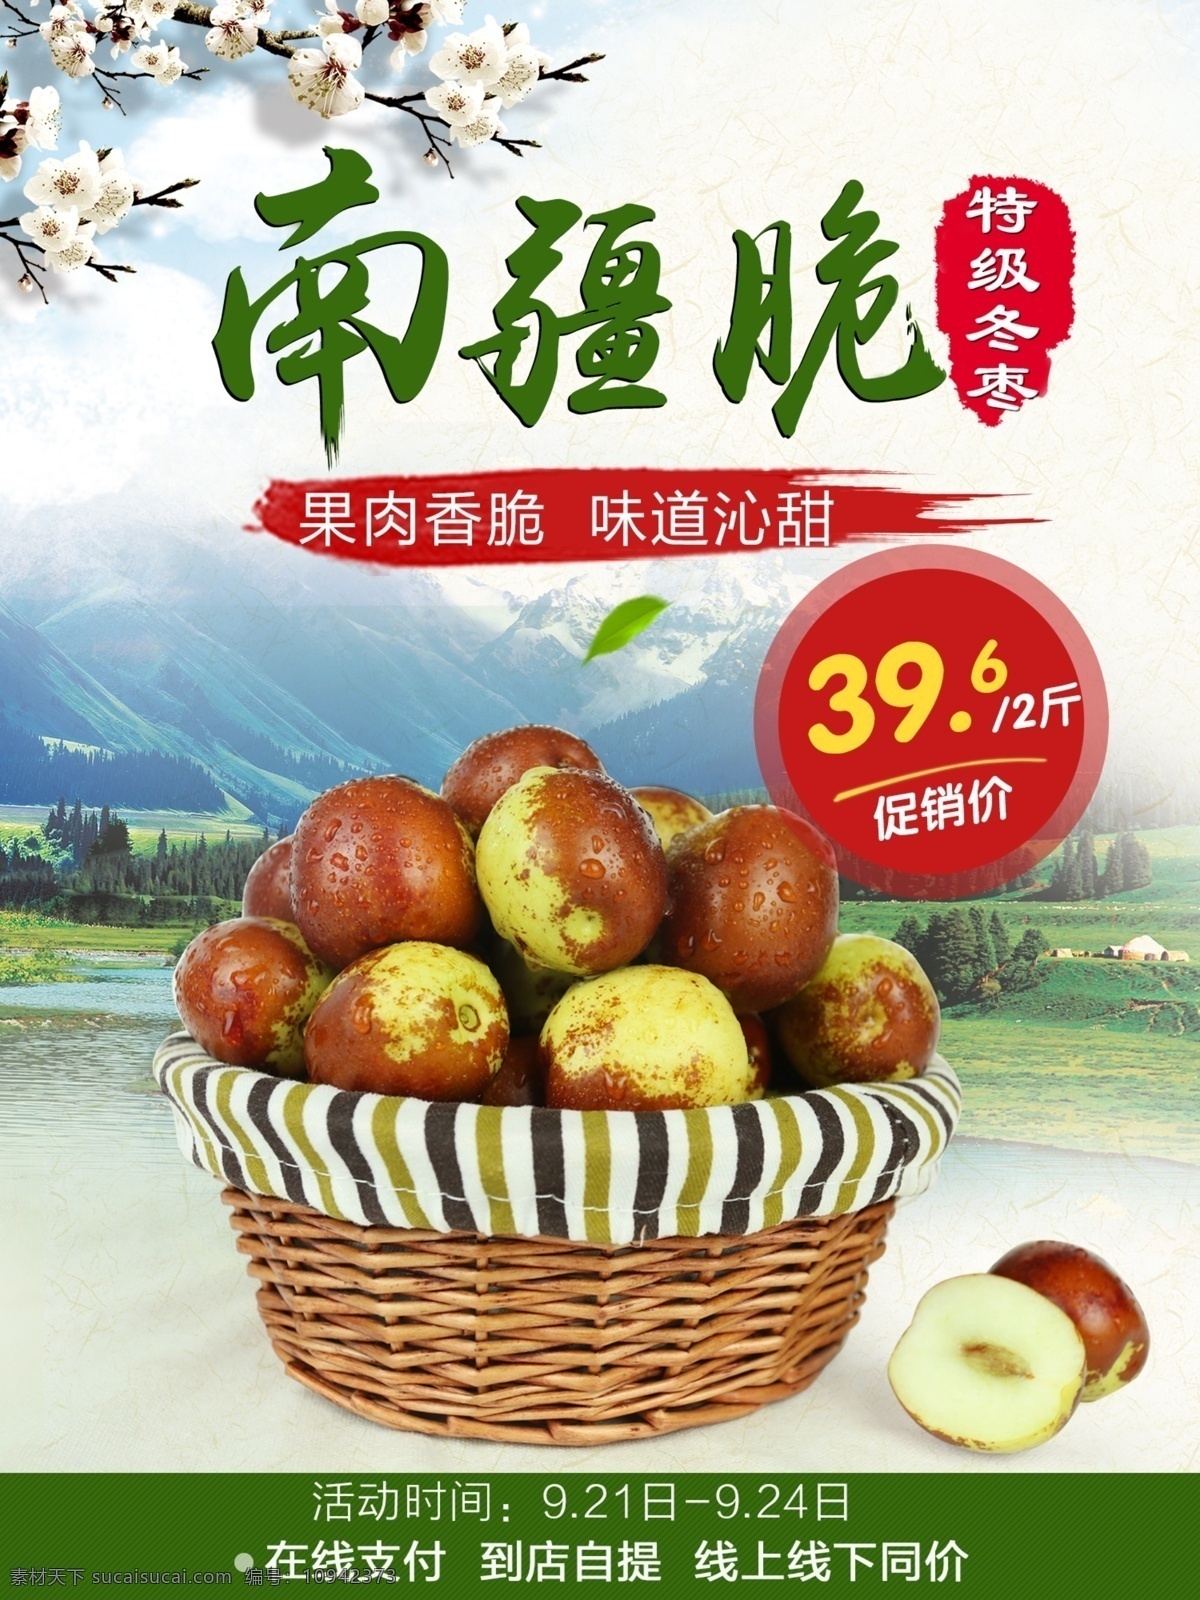 南疆 脆 冬枣 海报 水果海报 中国风 水果行业 促销海报 桃花